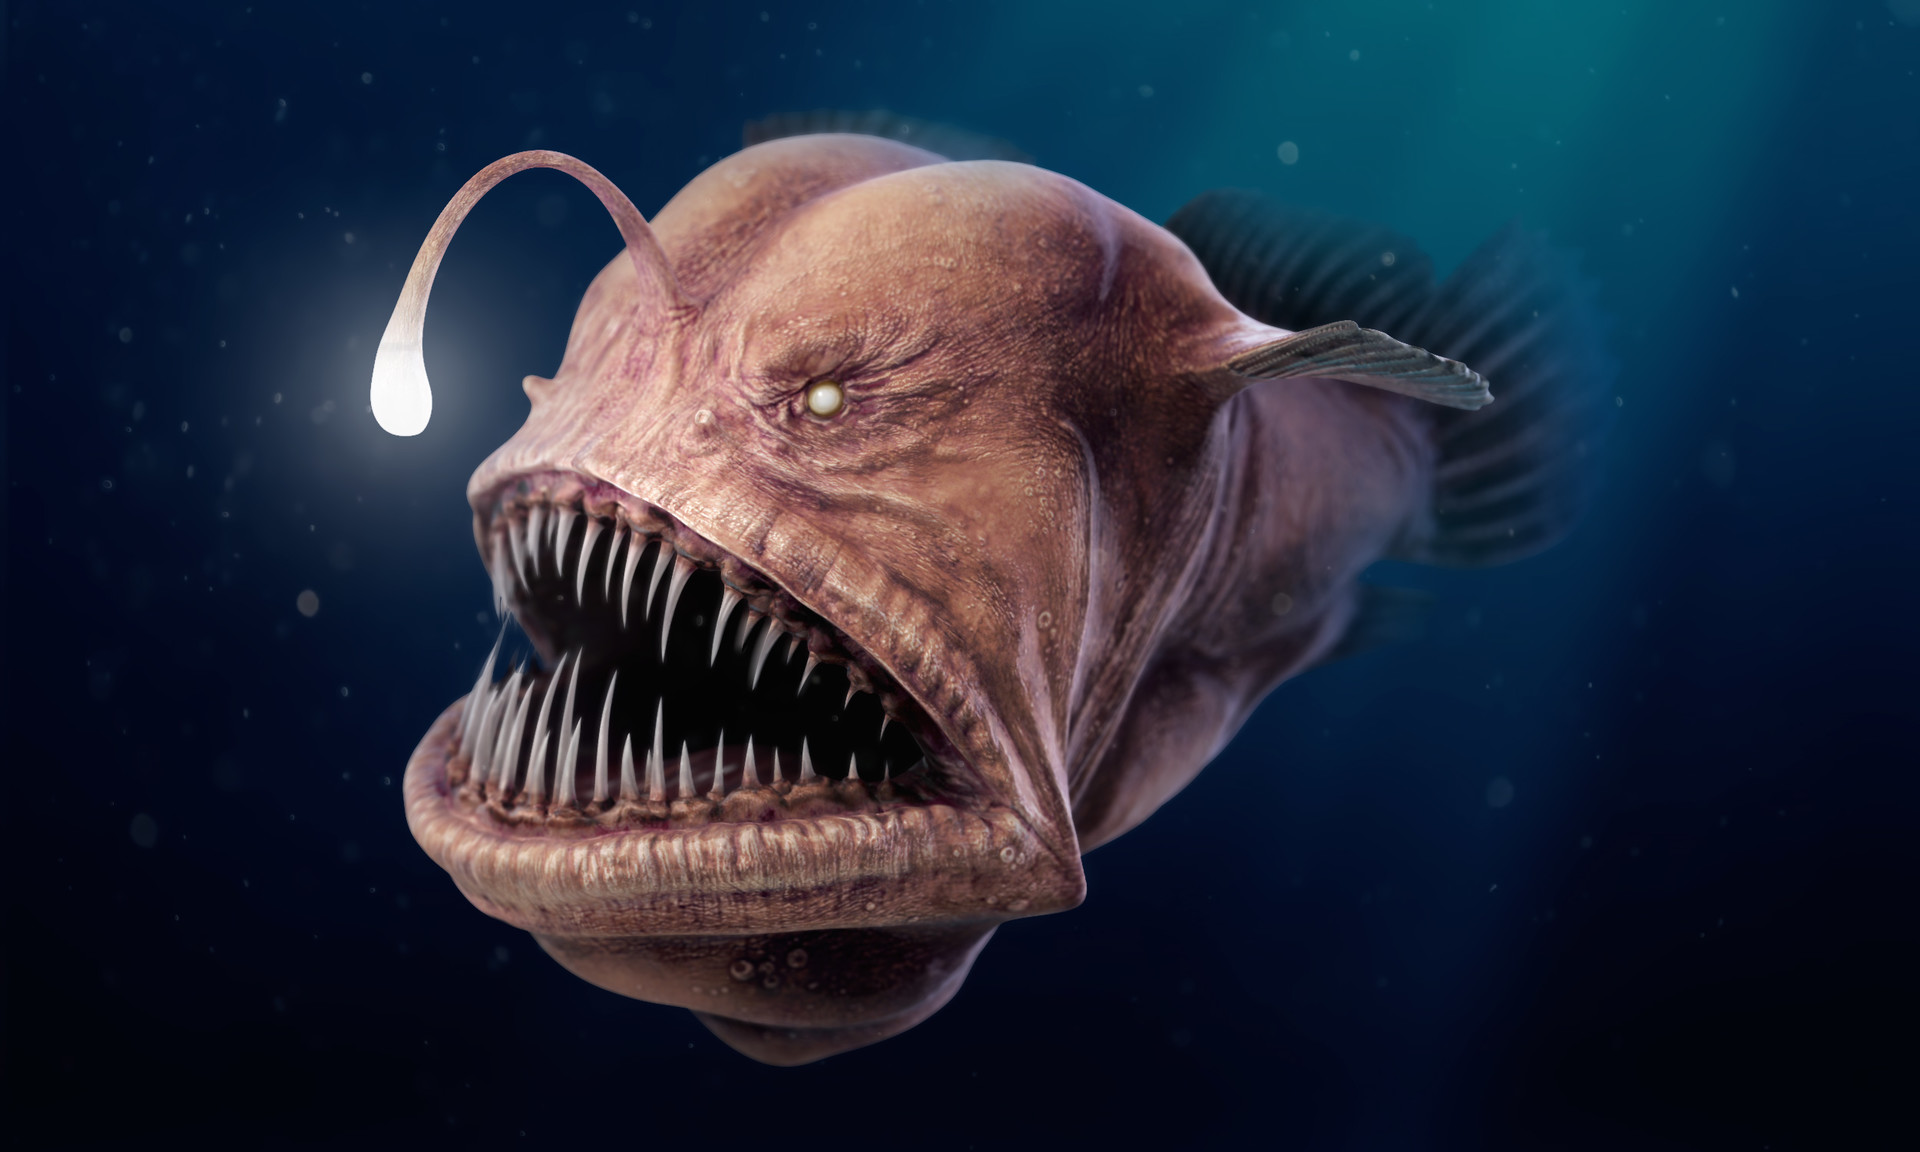 Angler Fish - 3D model by Thomas Veyrat - Sketchfab